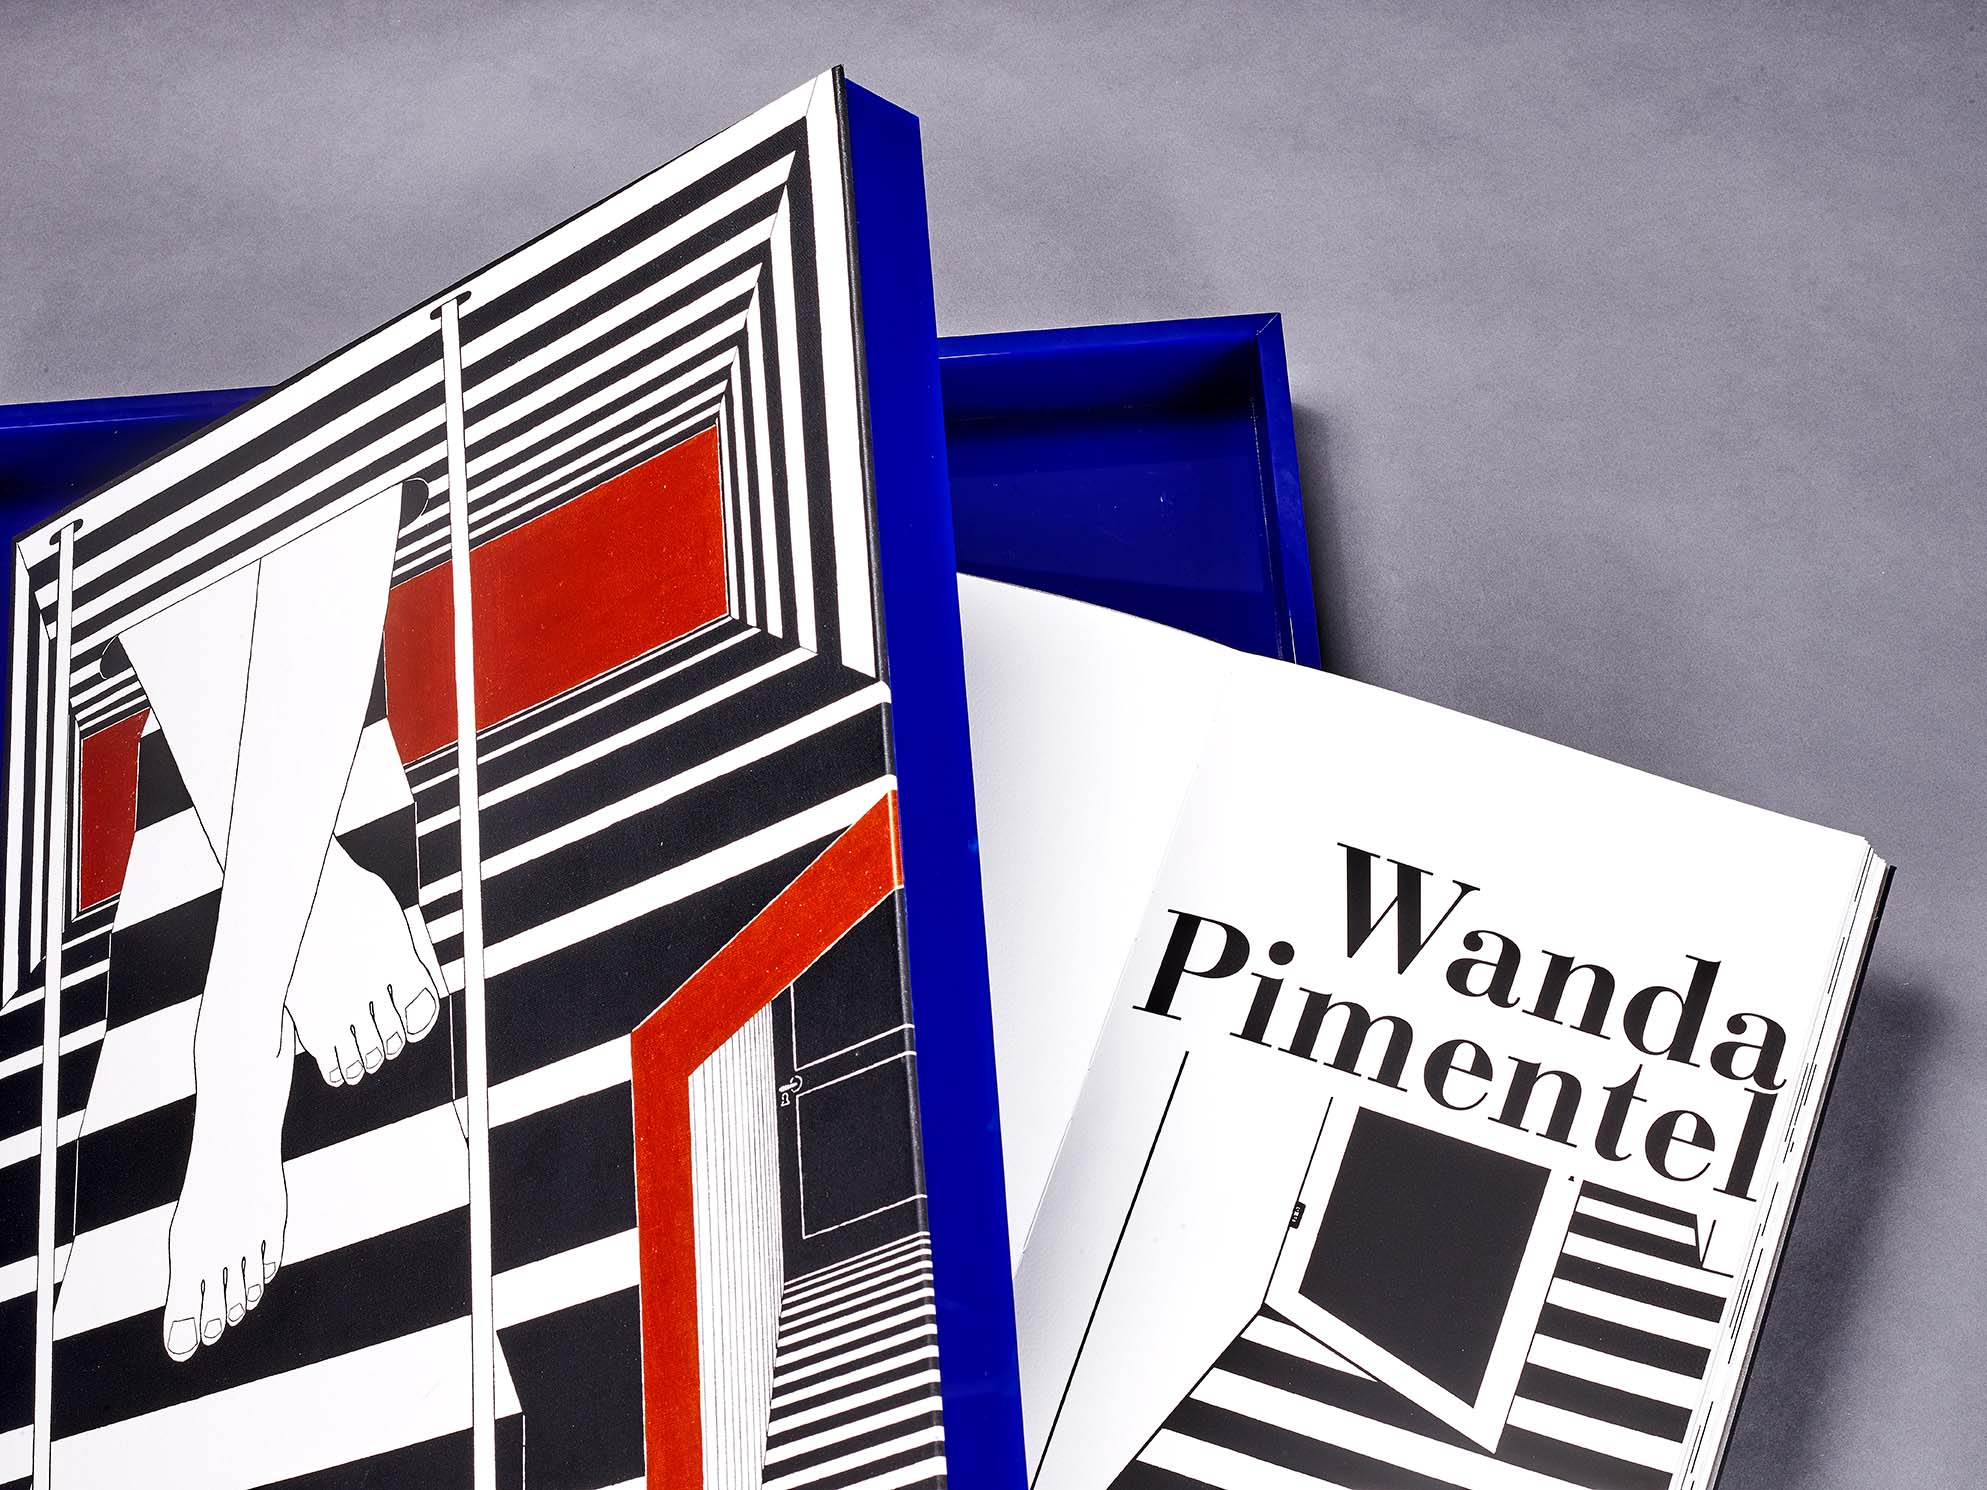 Anita Schwartz Galeria de Arte lança o livro “A coleção Wanda Pimentel” durante a SP-Arte